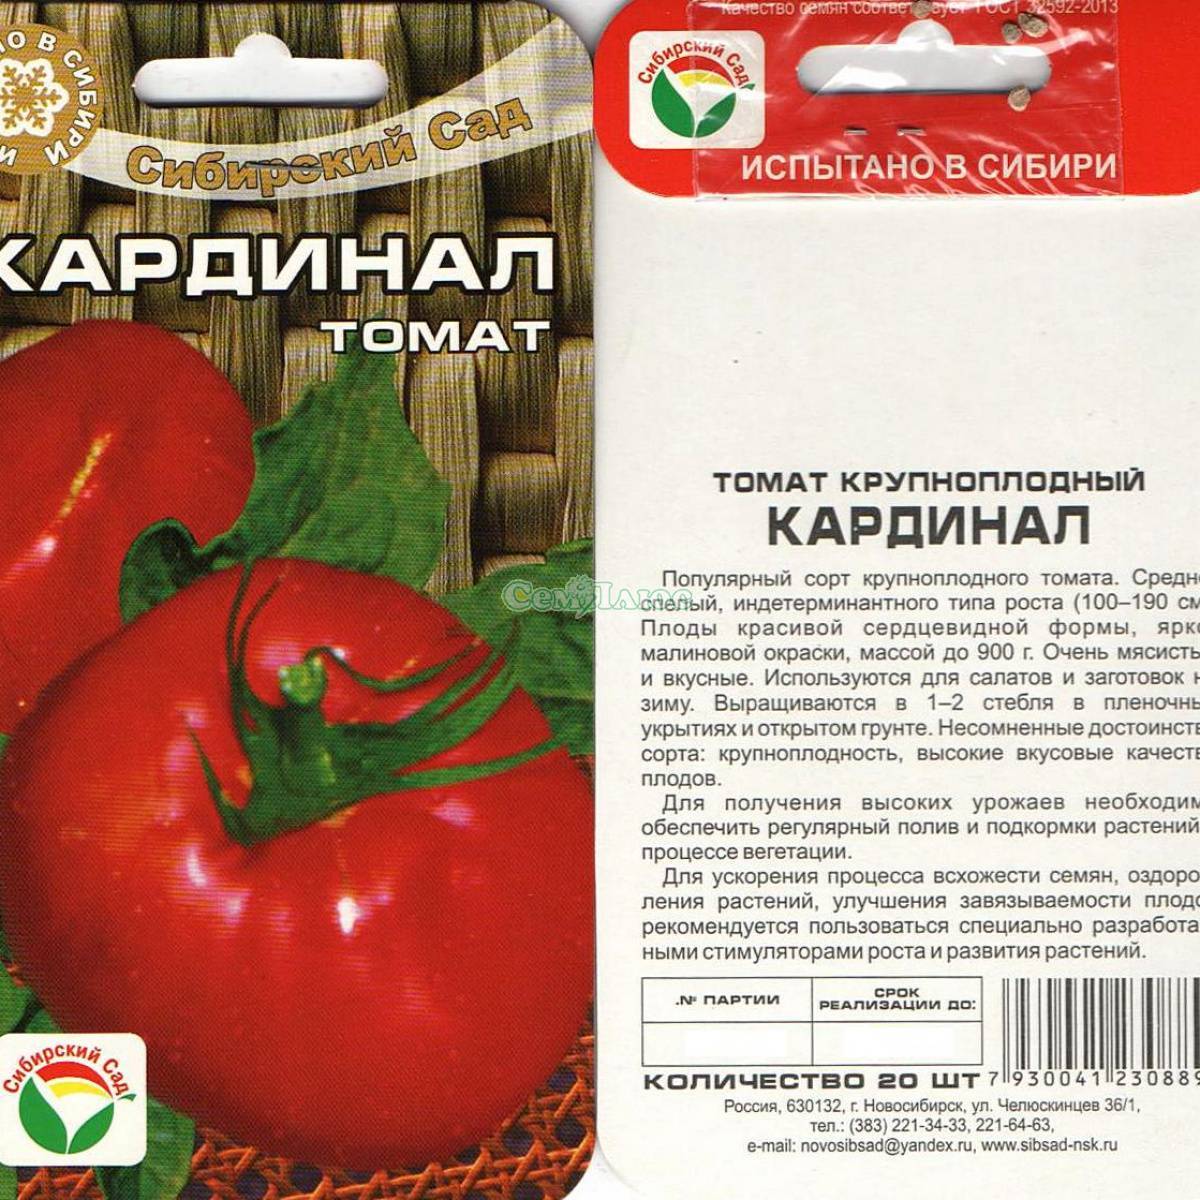 Как правильно выращивать томат «львович f1»: инструкция от опытных агротехников для максимальной урожайности